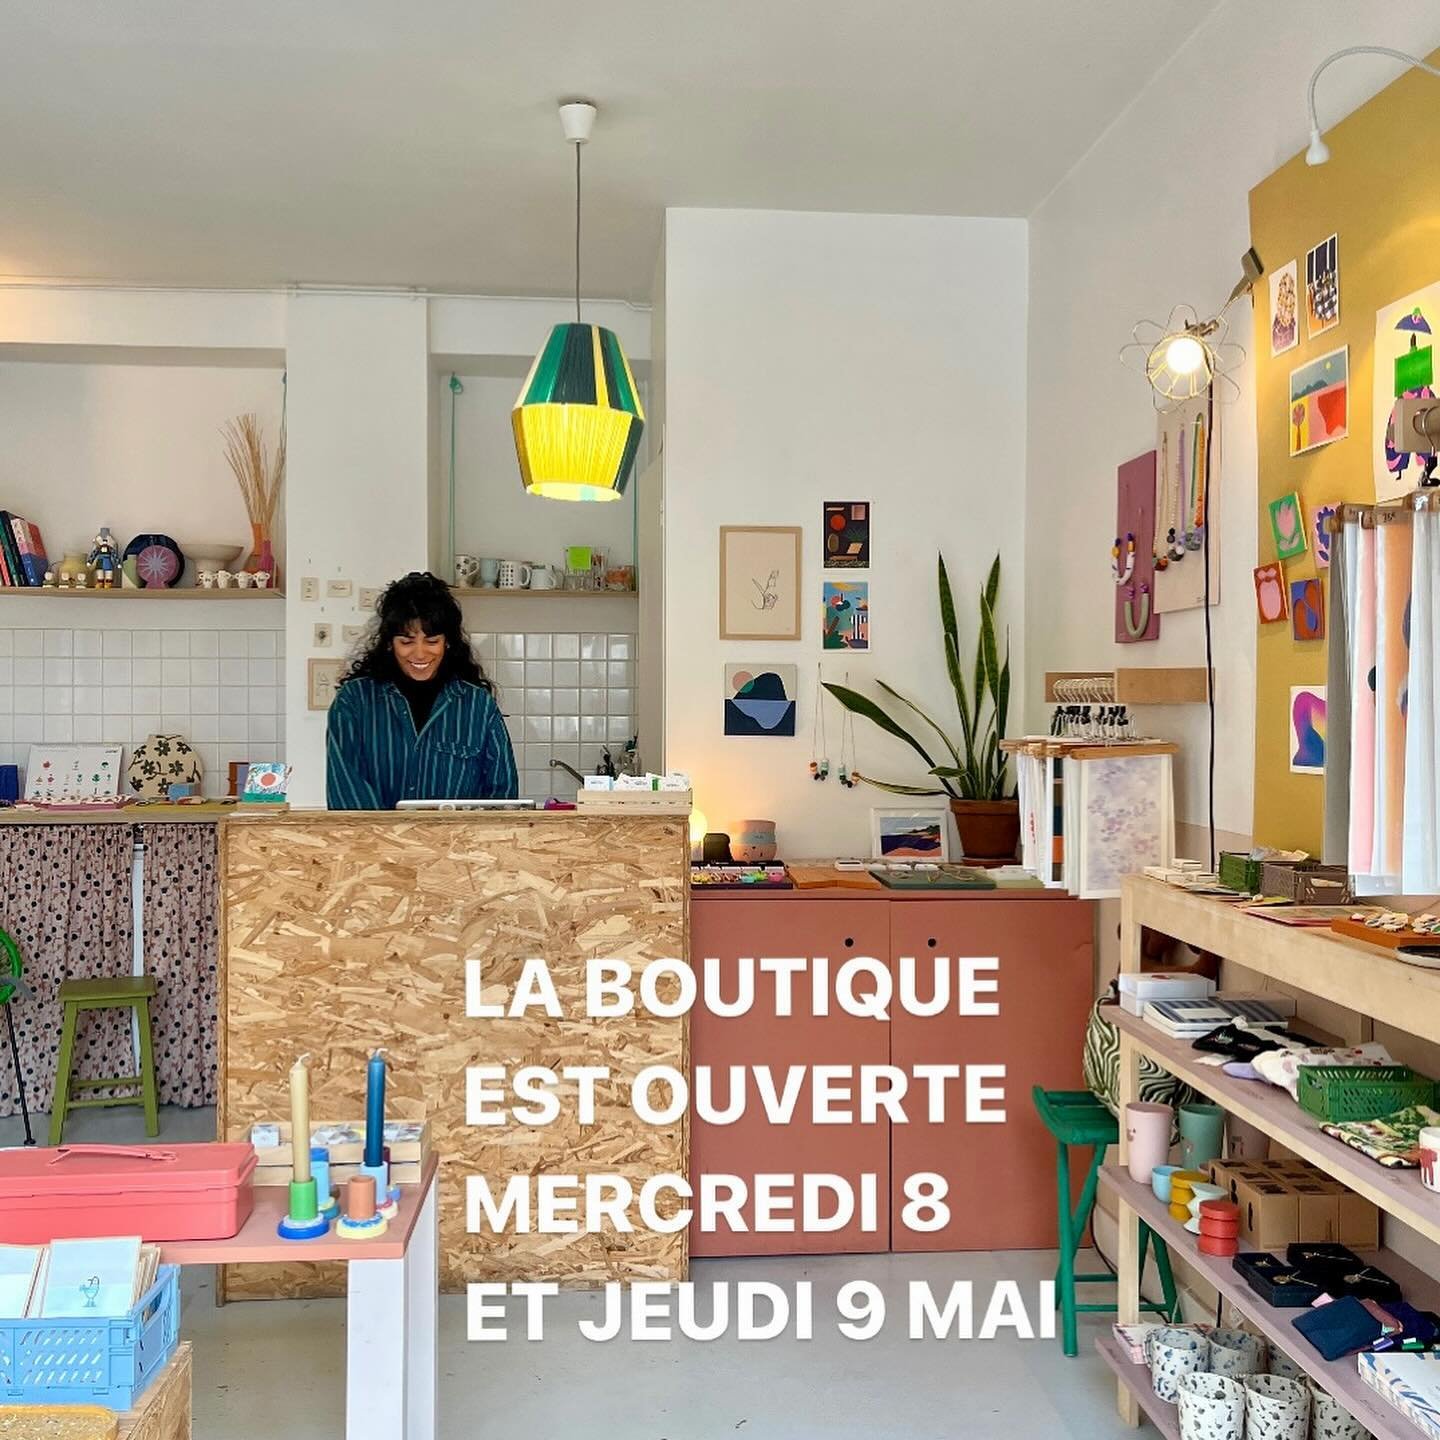 Bonjour ! La boutique est OUVERTE mercredi 8 et jeudi 9 mai 🌸🌈☀️ Myl&egrave;ne vous accueille toute la semaine de 11h &agrave; 19h ! Profitez-en pour d&eacute;jeuner au @cafeklin ! 
6 rue Deguerry Paris 11e

#klindoeil #cafeklin #ruedeguerry #paris